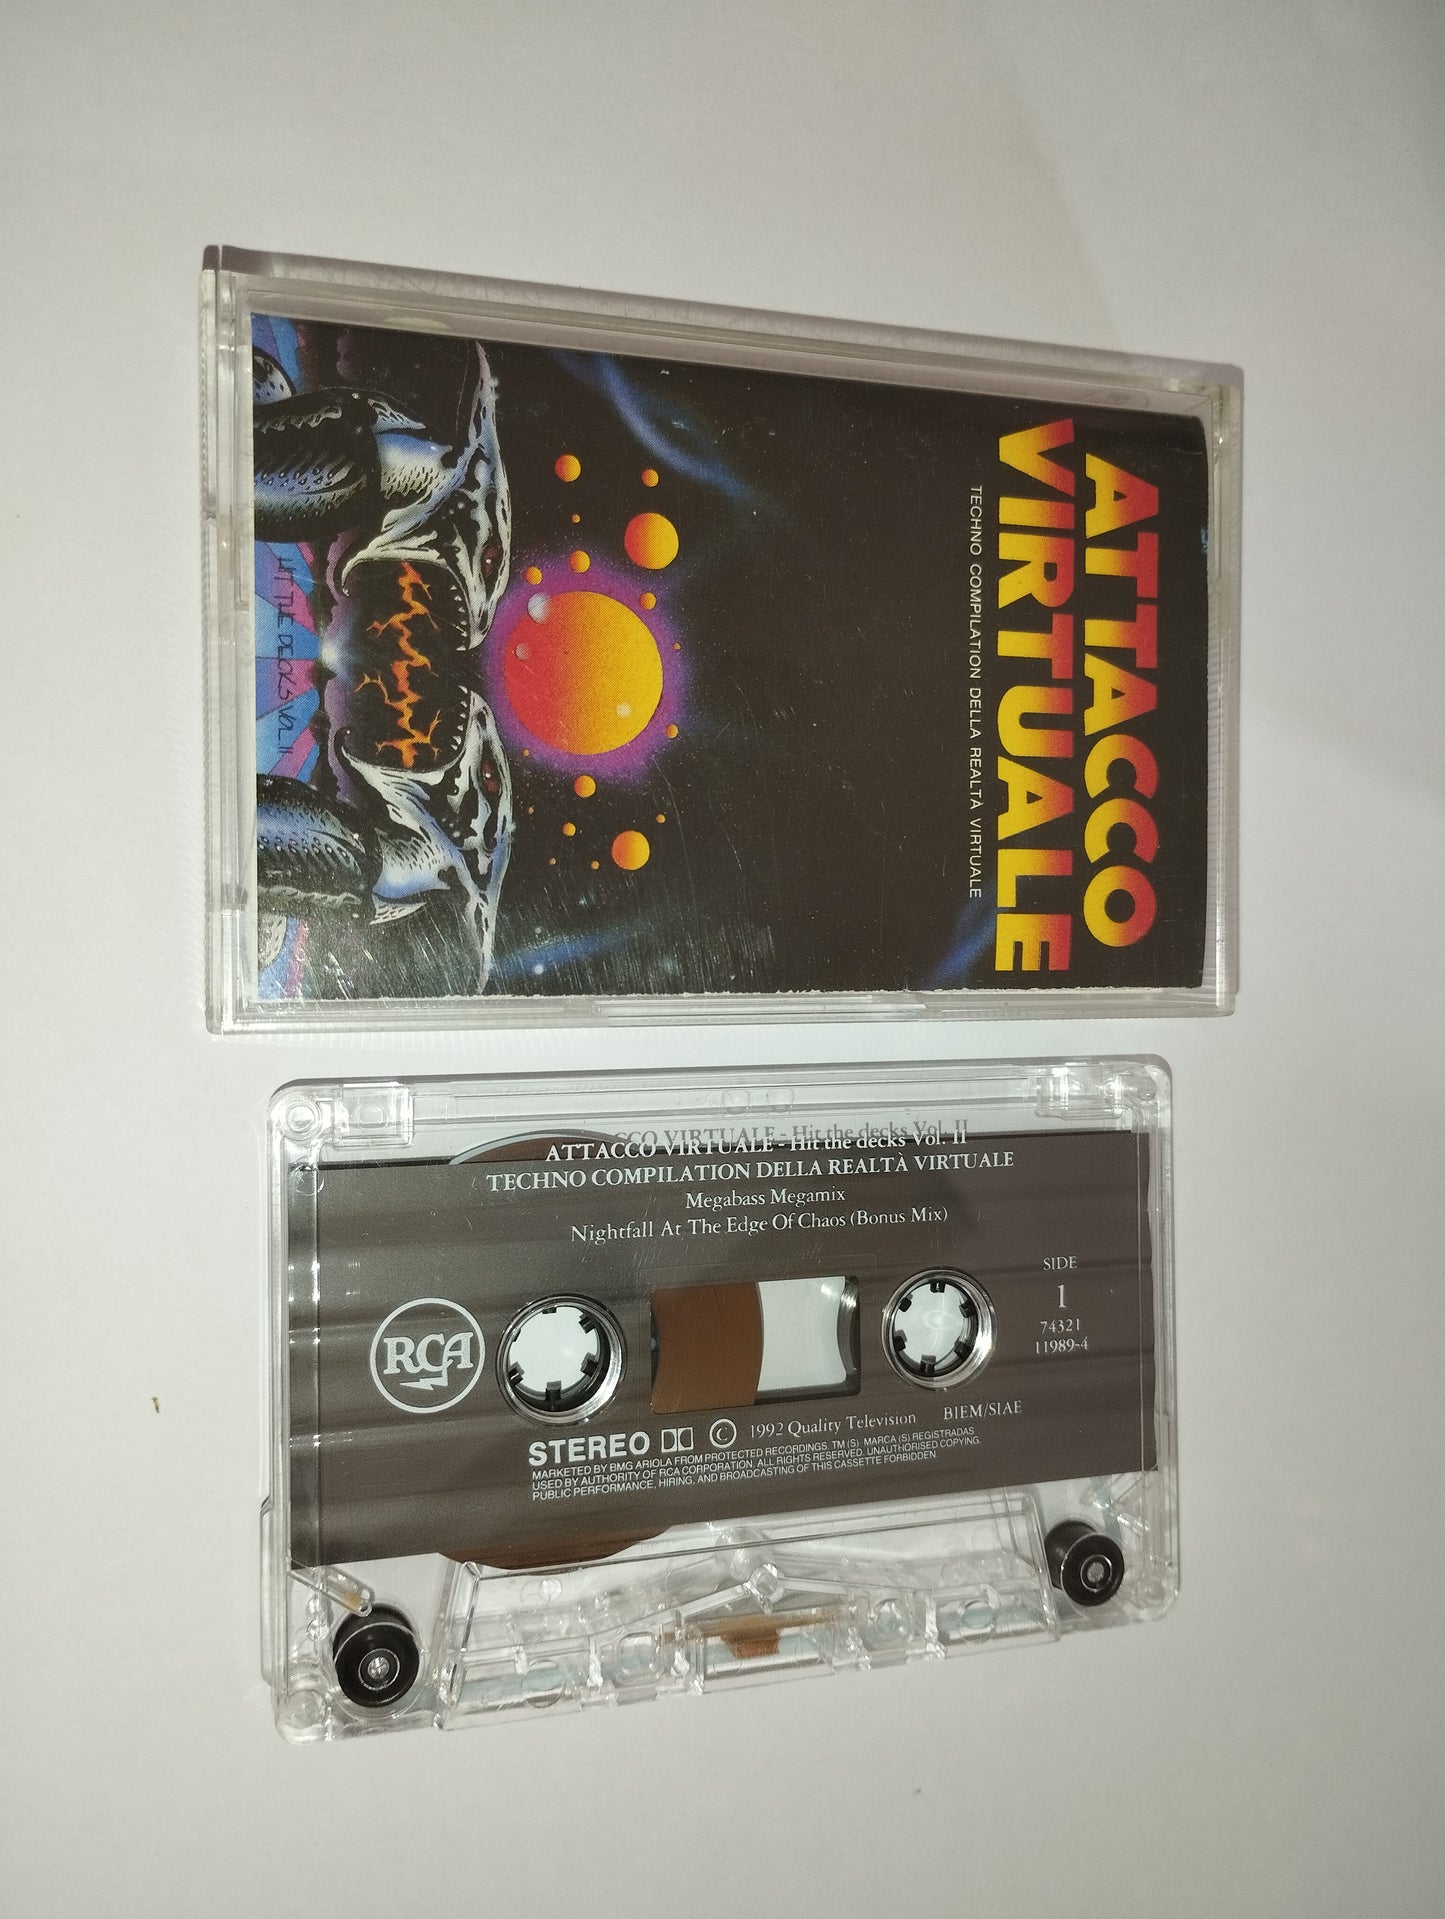 Attacco Virtuale Musicassetta
Edita nel 1992 da RCA